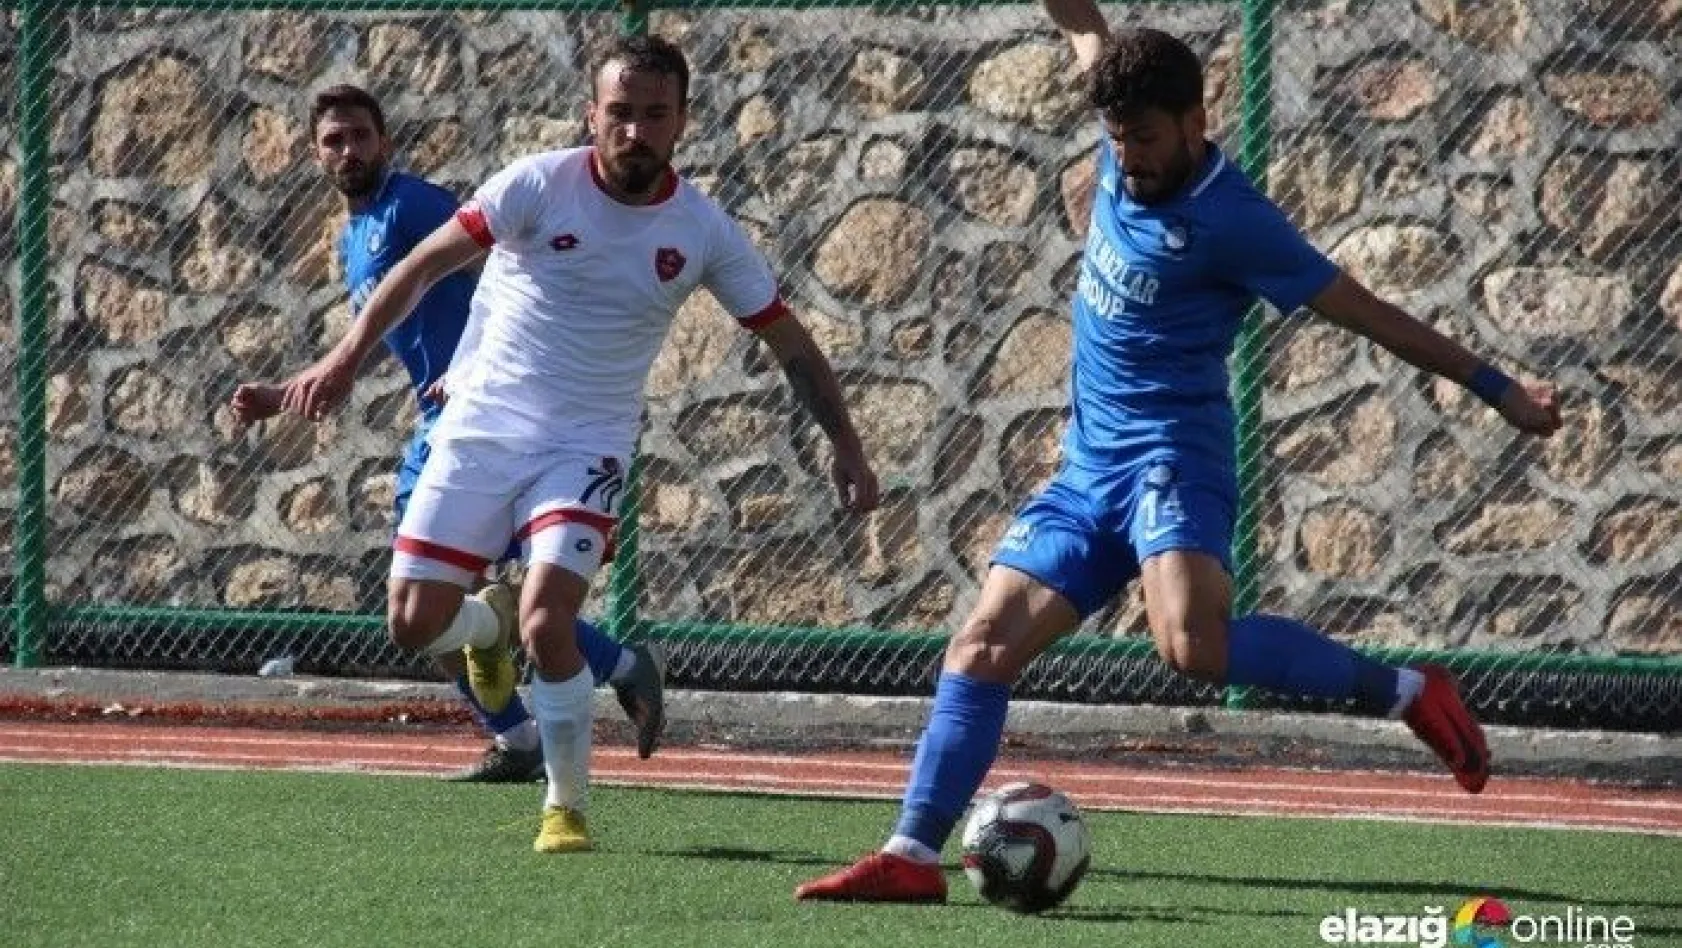 Elazığ Belediyespor, sahasında Payasspor'a 2-0 mağlup oldu